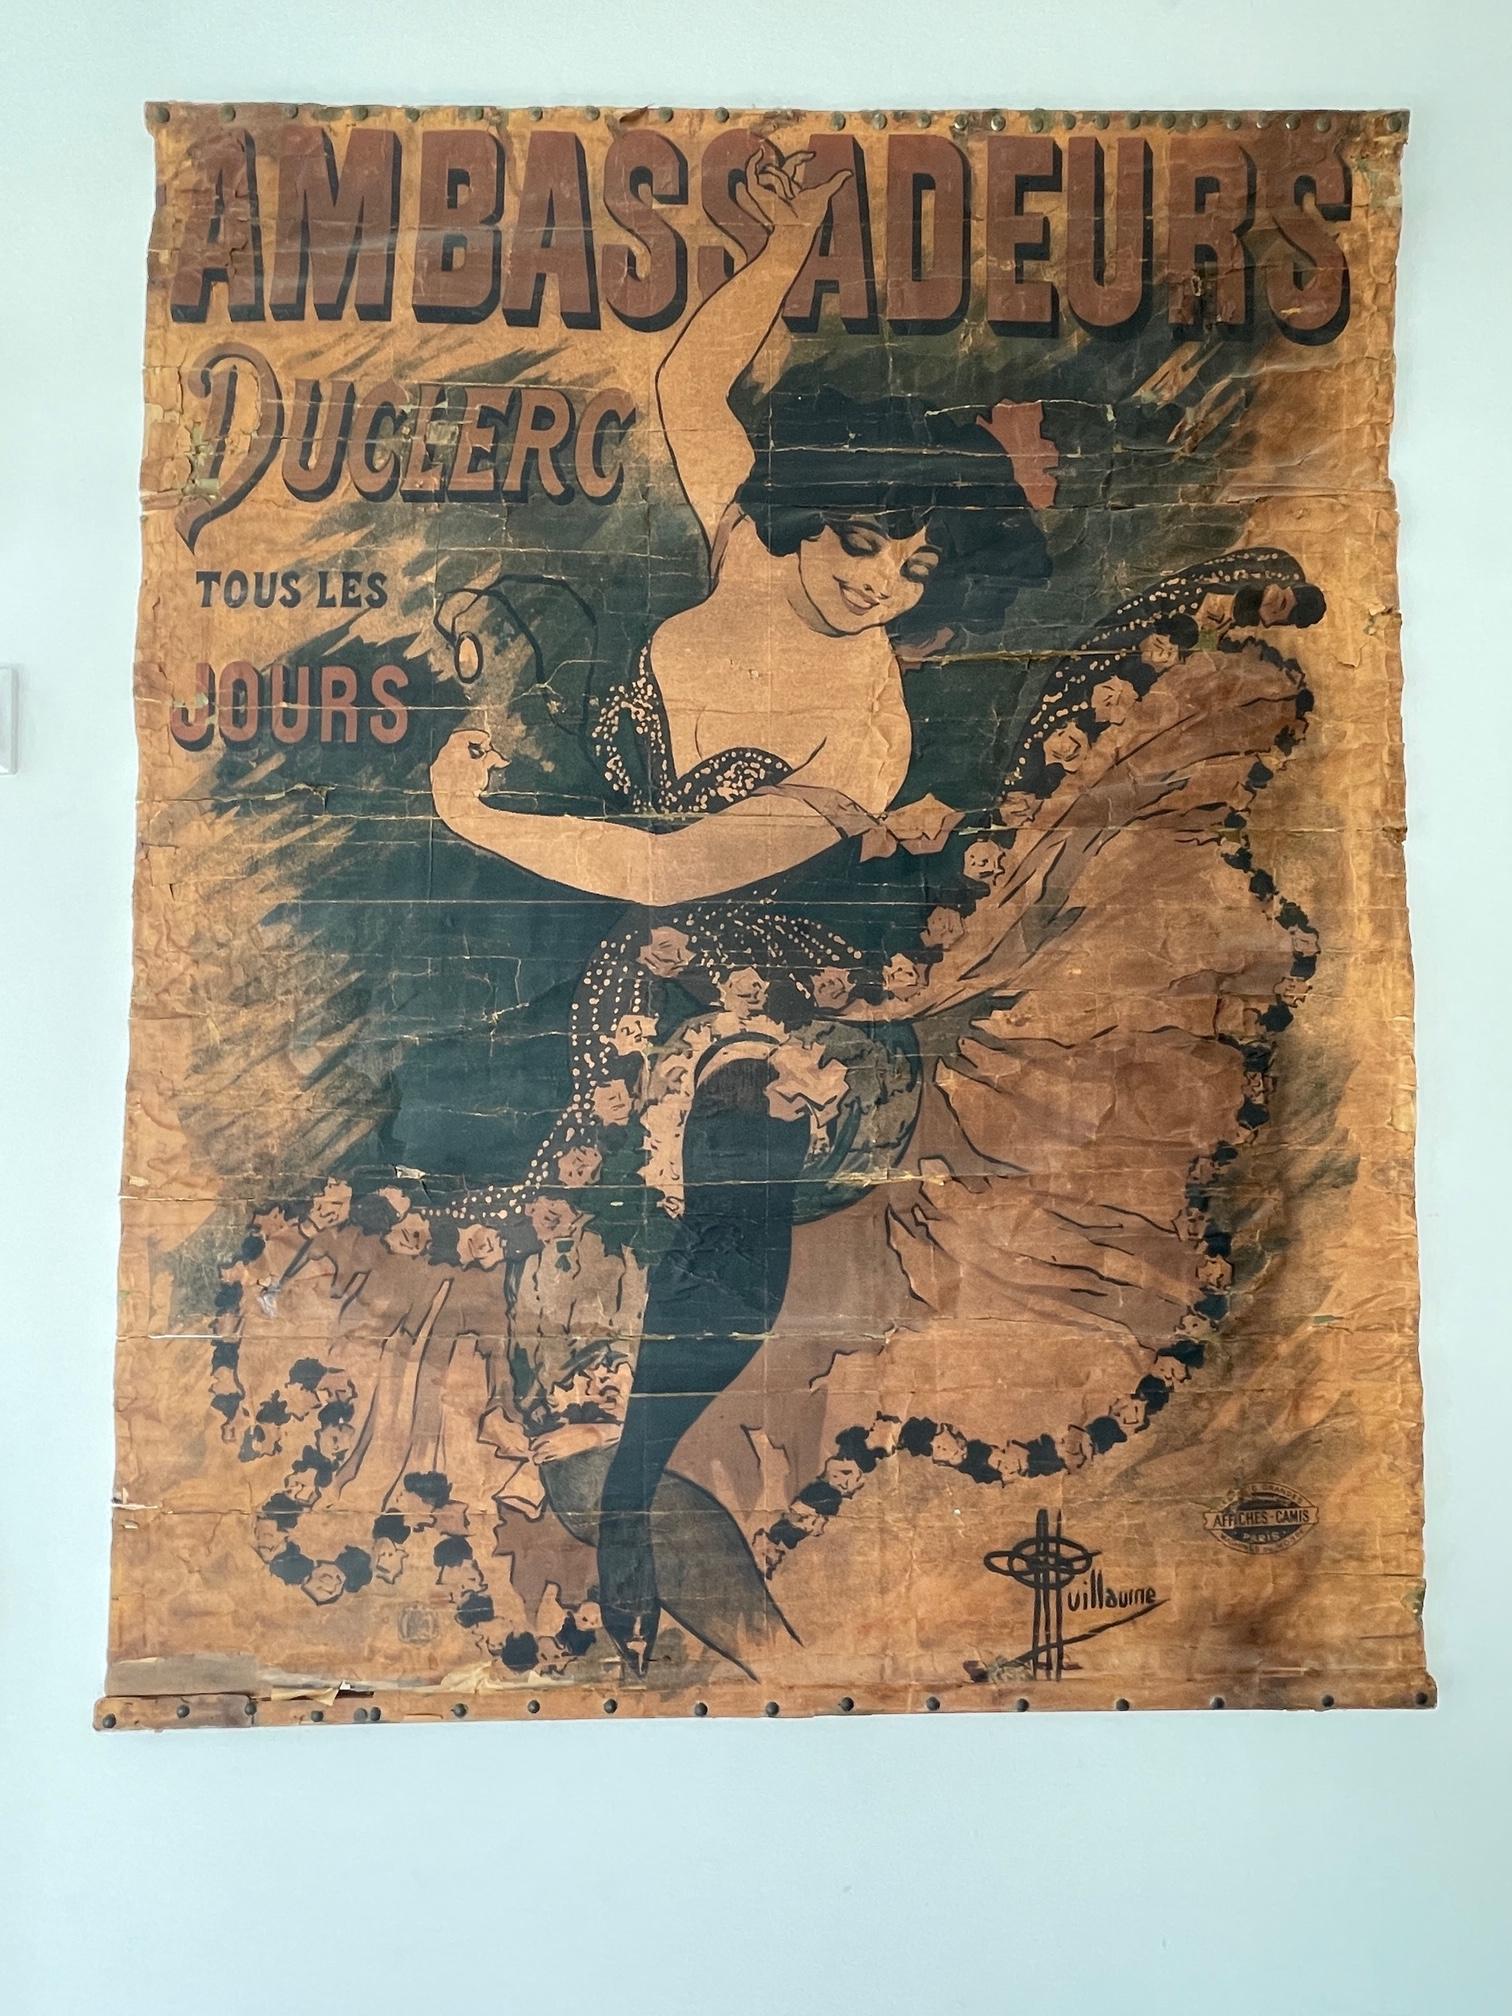 Papier 1894 Antique affiche / poster Ambassadeurs Duclerc tous les jours - Guillaume en vente